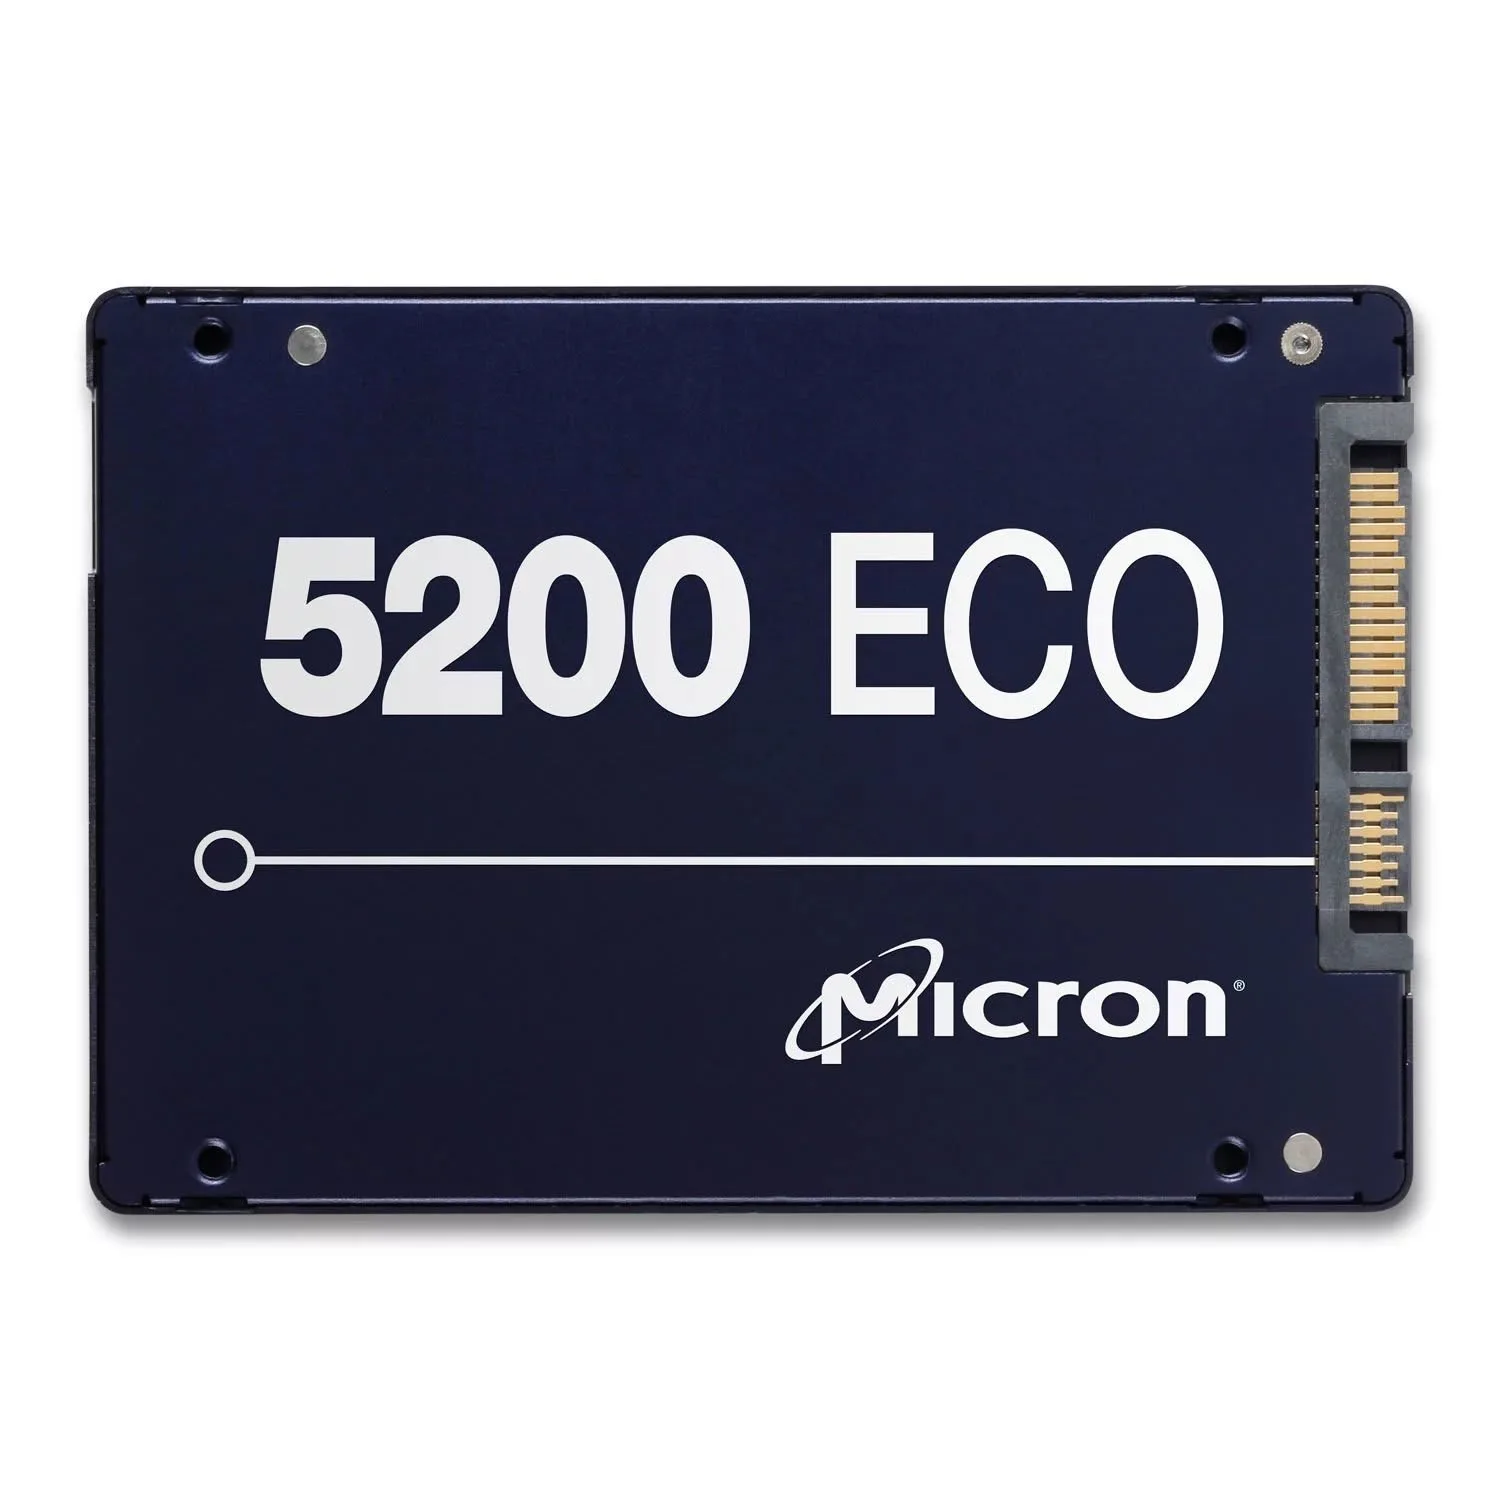 Micron 5200 ECO 7.68TB SATA 6Gbps SFF